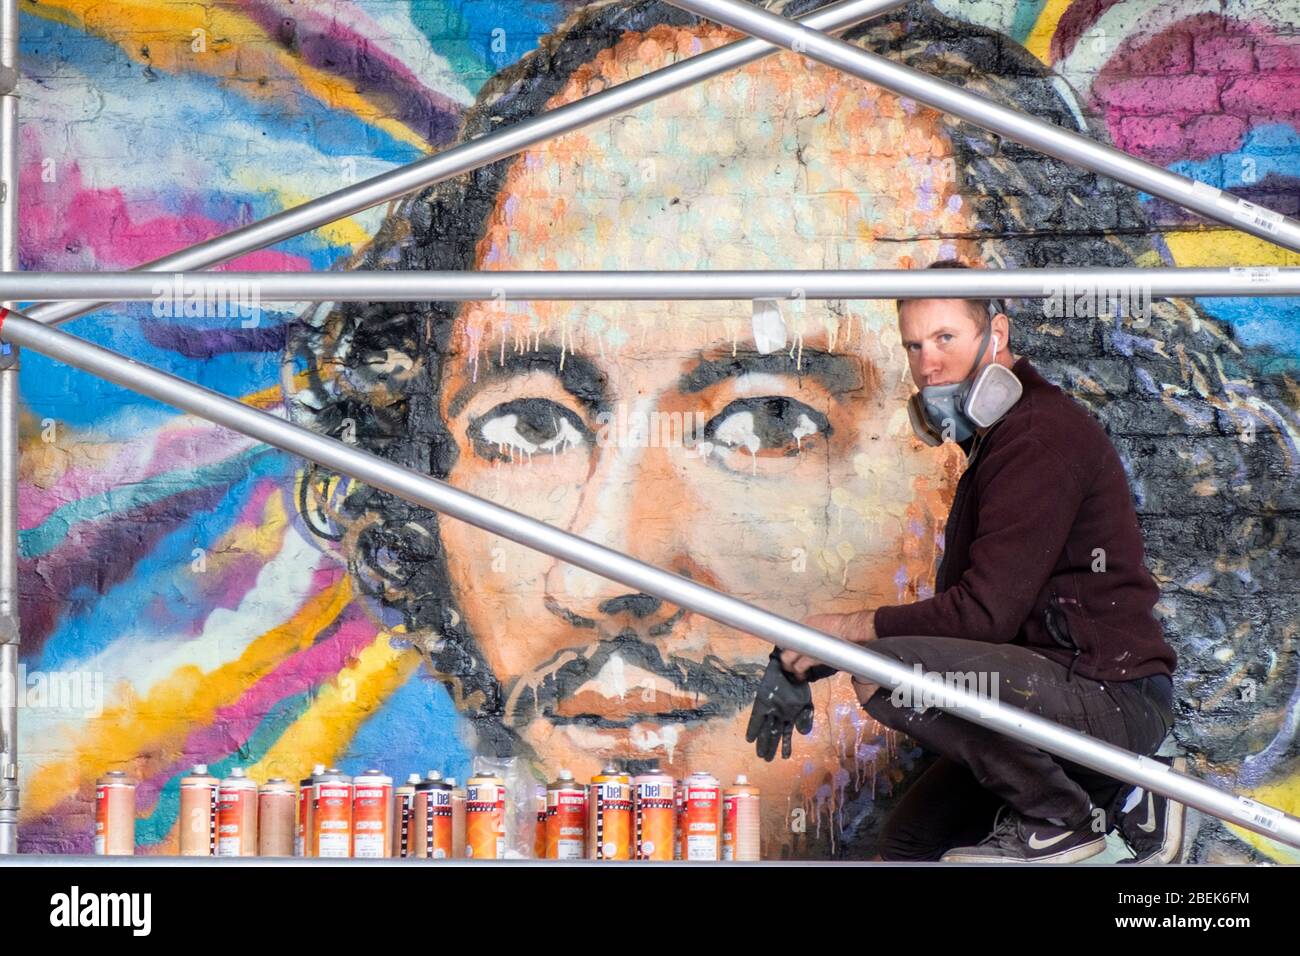 The Australian street artist Jimmy C (James Cochran) working on his public street art portrait of Shakespeare in 2016. Clink Street, London Stock Photo